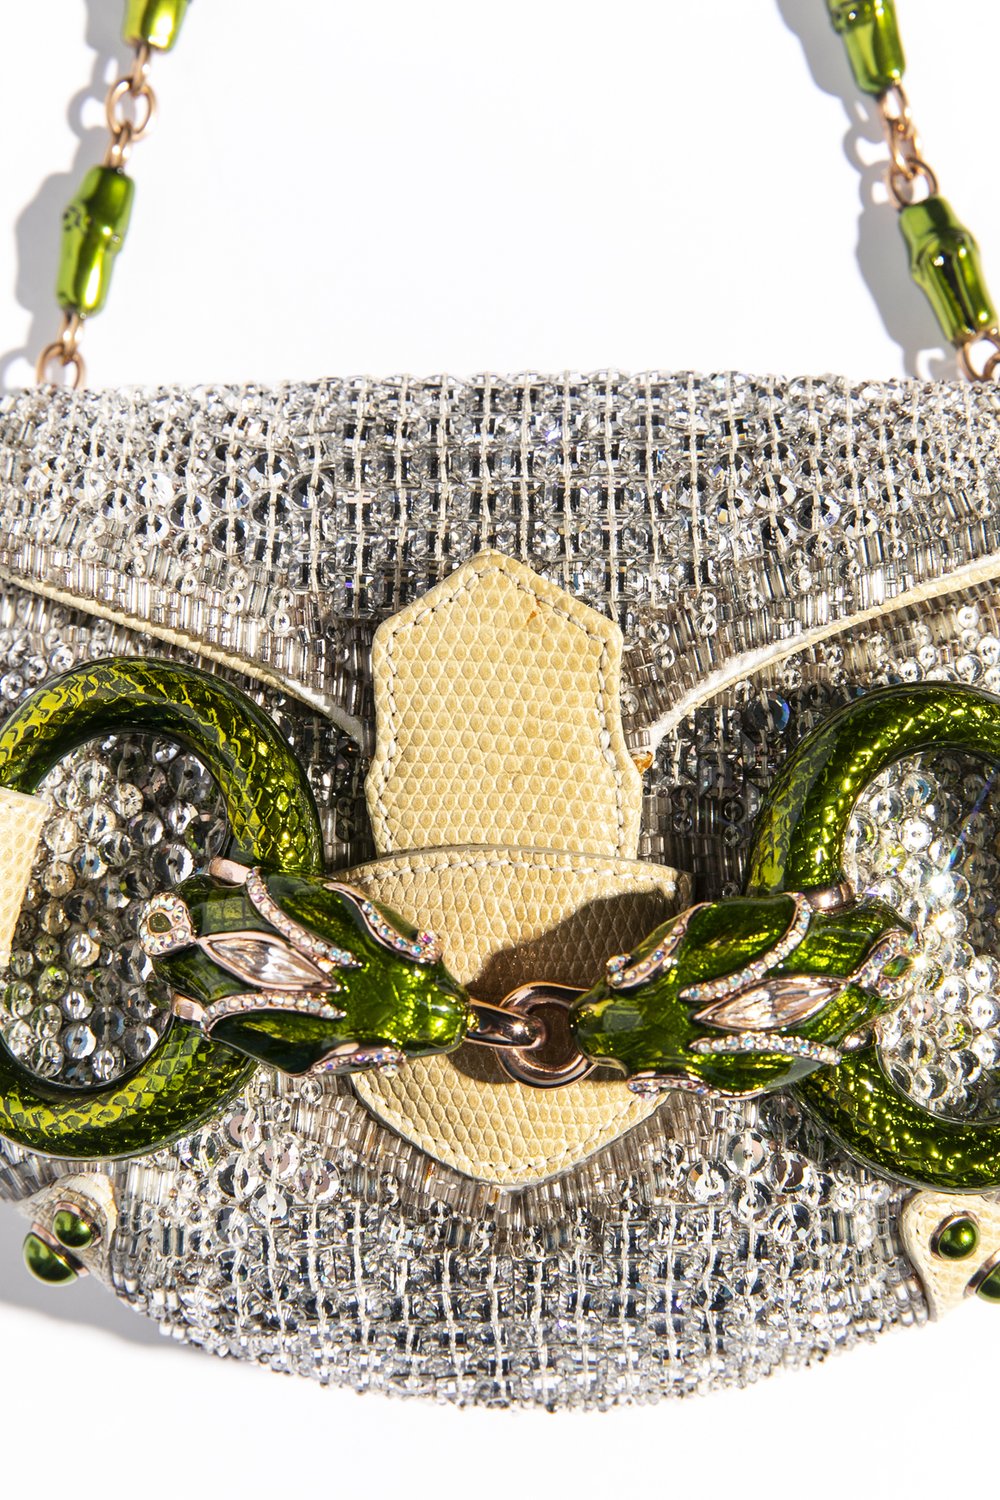 GUCCI Tom Ford Limited Edition Snake Serpent Horsebit Embellished Clutch Bag